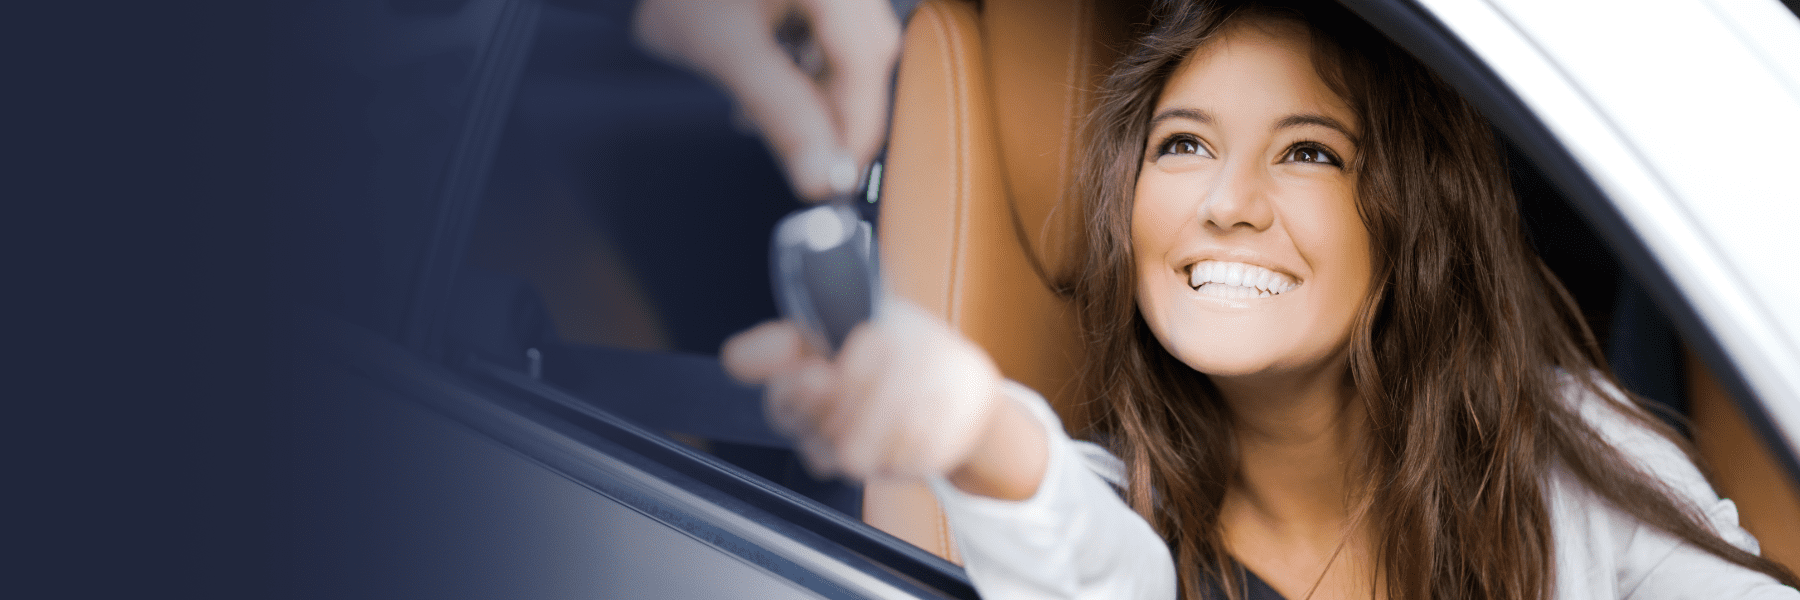 Glückliche Frau im Auto, die Ihre Fahrerlaubnis zurück erhält dank Vorbereitung zur positiven MPU